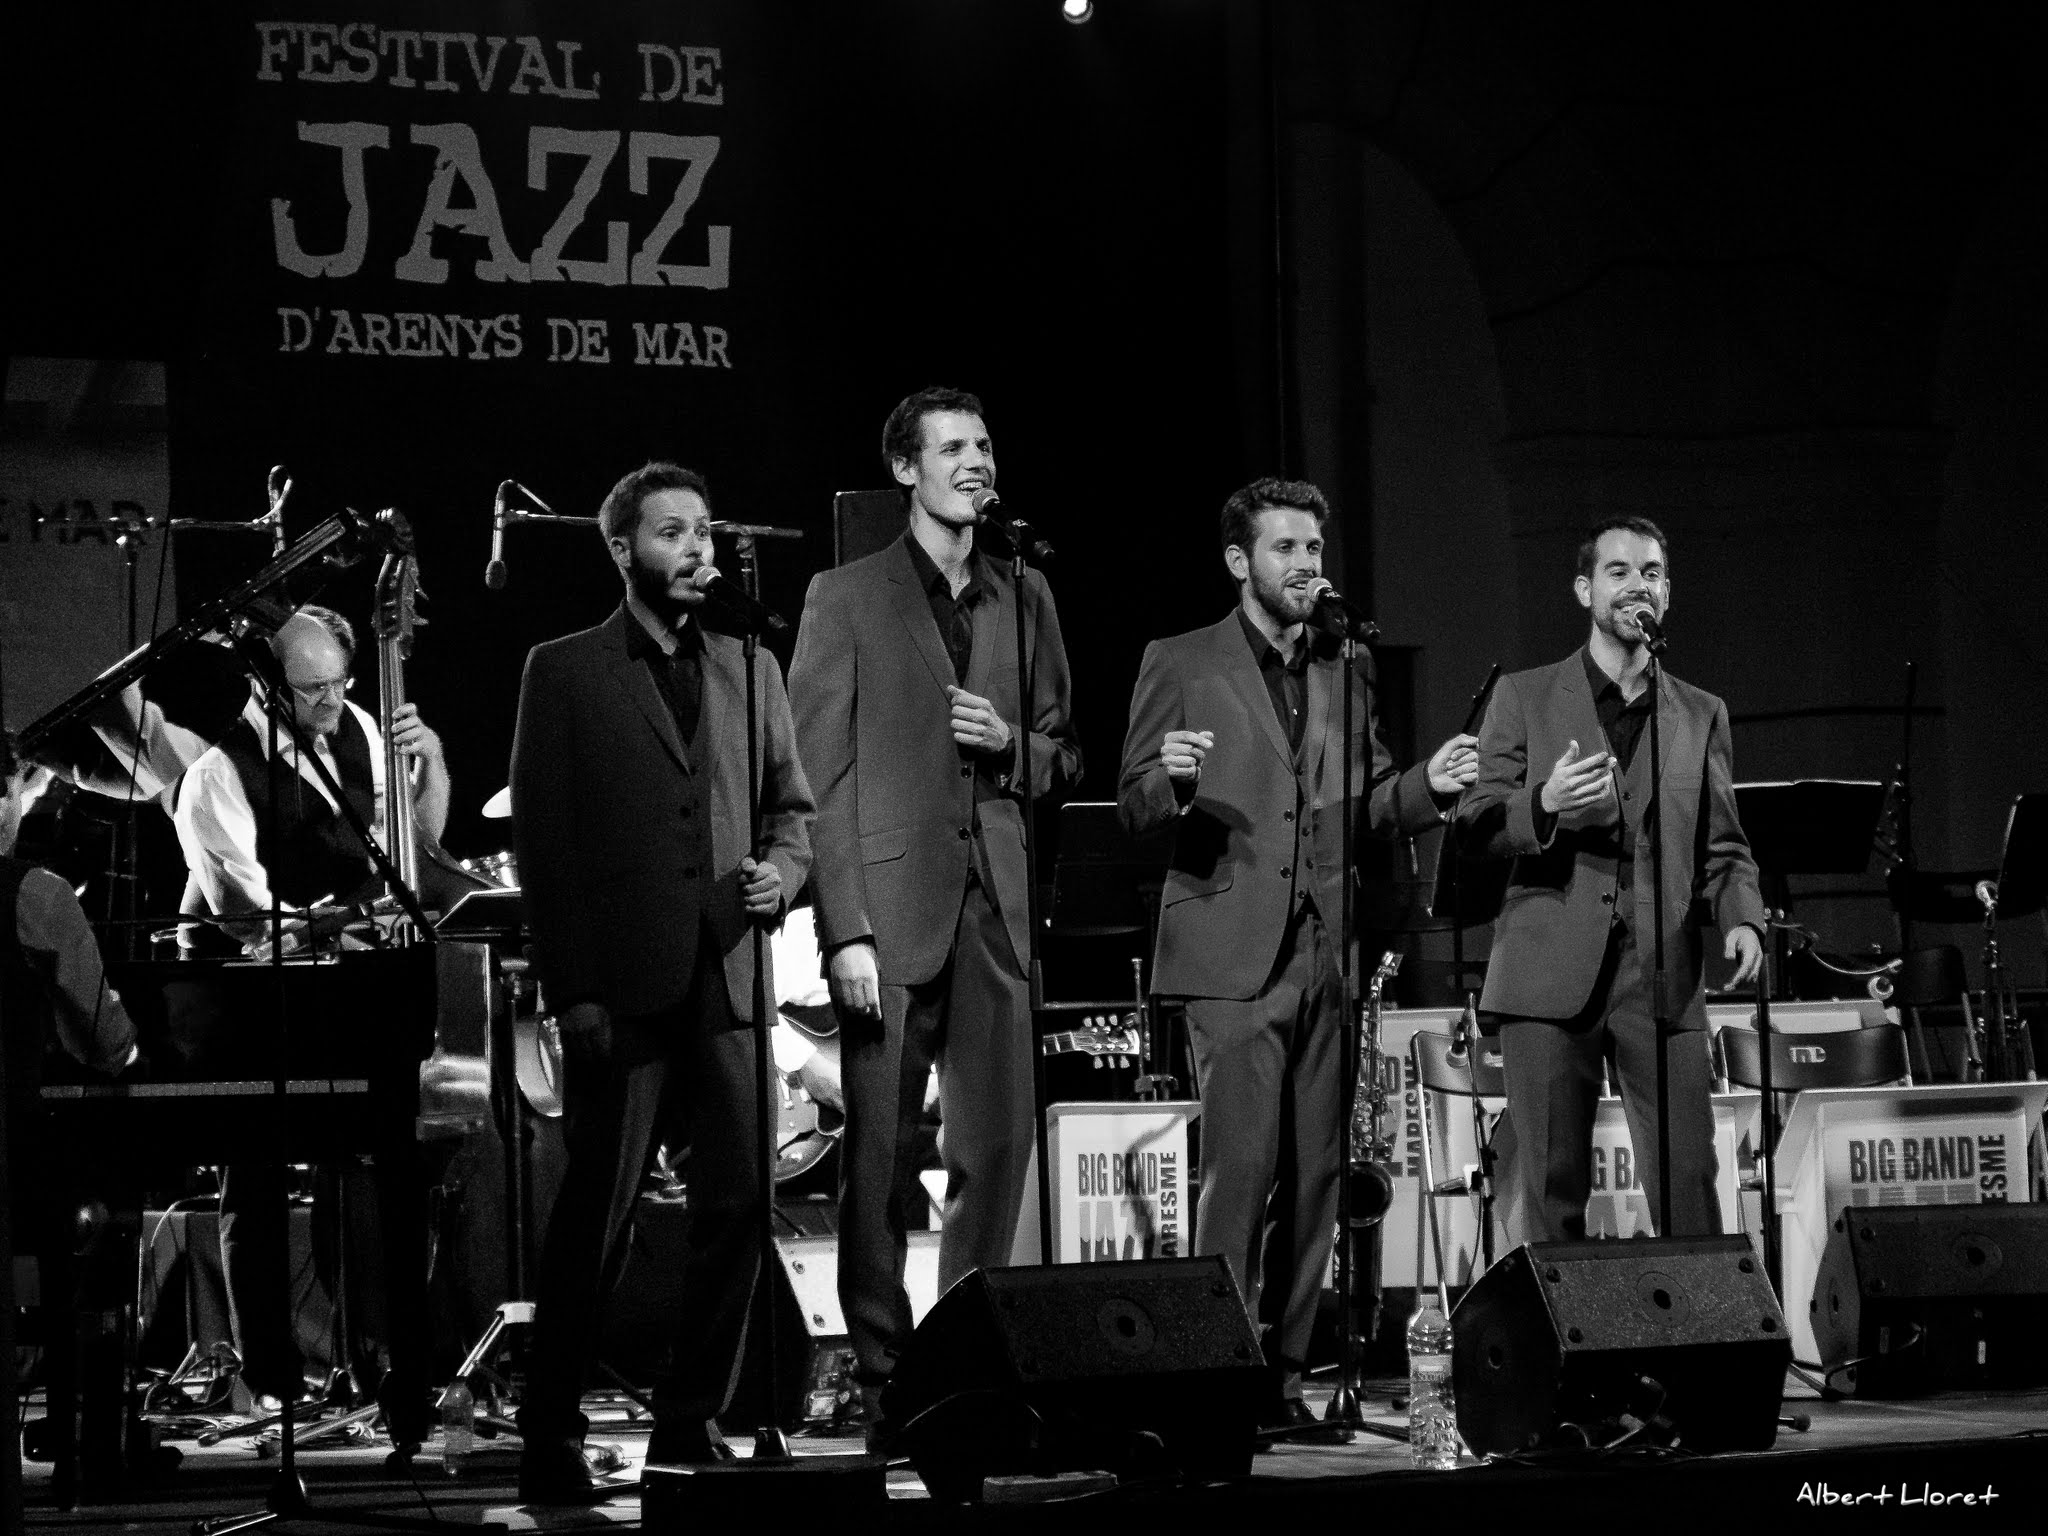 Imatges del 25 Festival de Jazz d'Arenys de Mar - 2016 - Foto 86866081